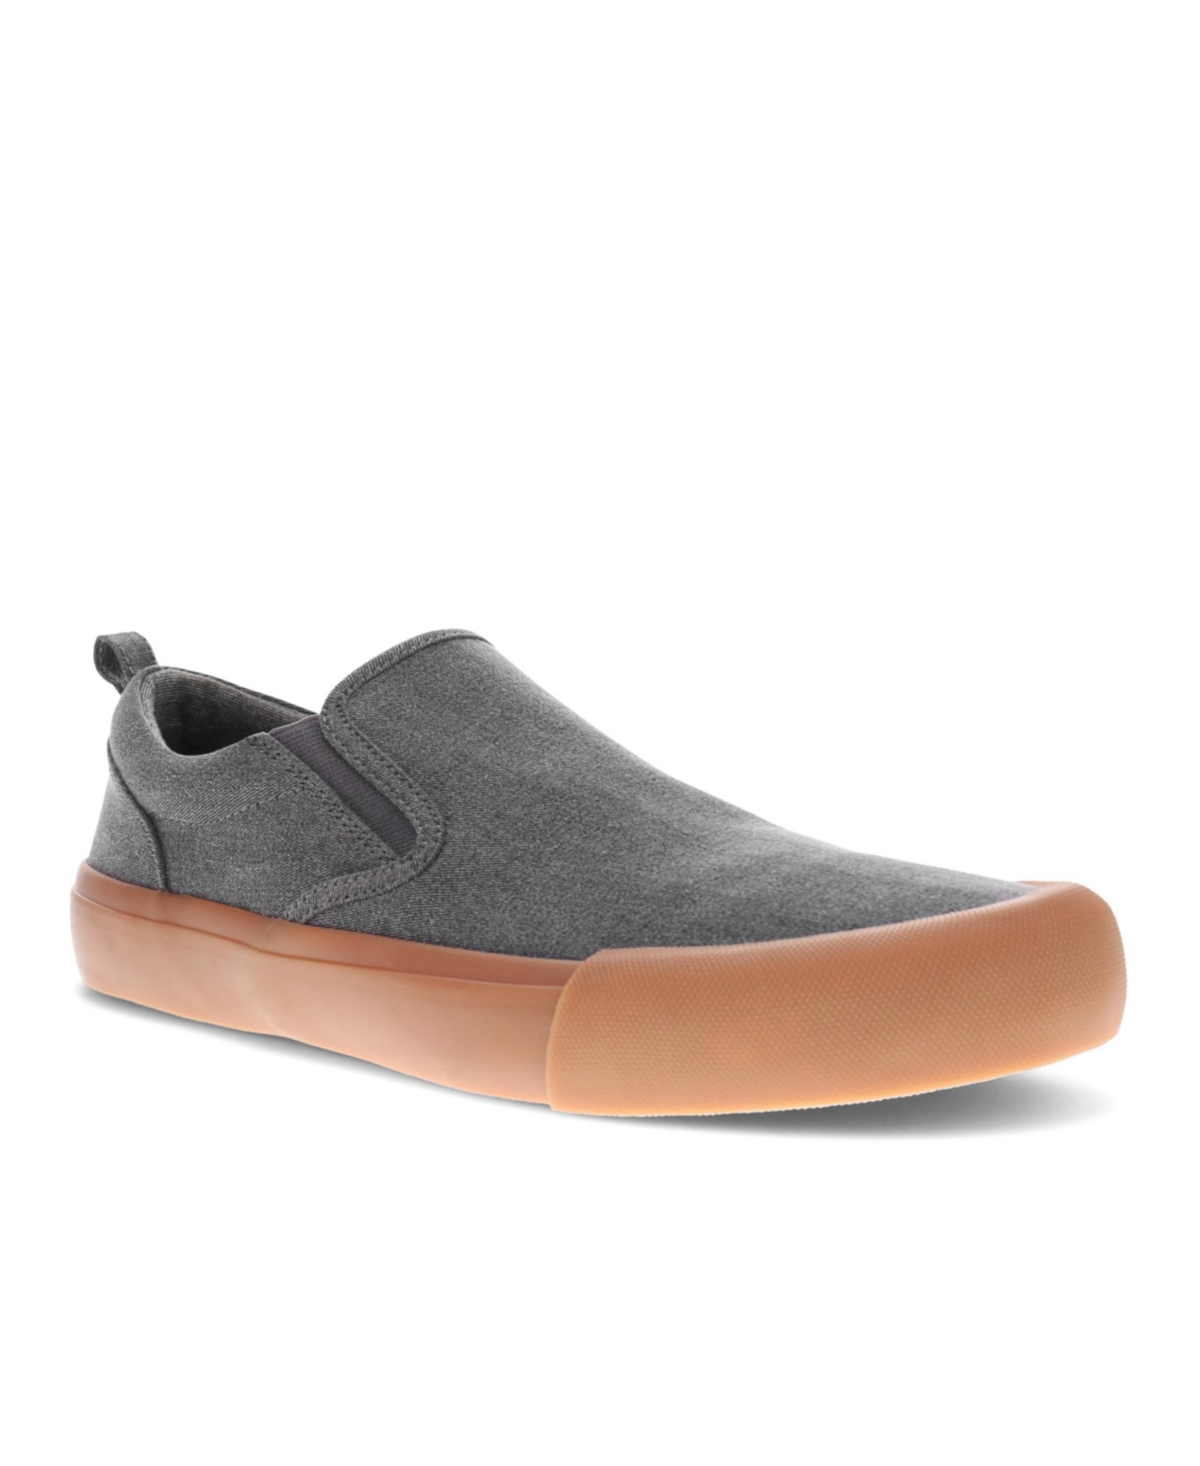 Men's Fremont Slip-on Sneaker - Gray, Gum